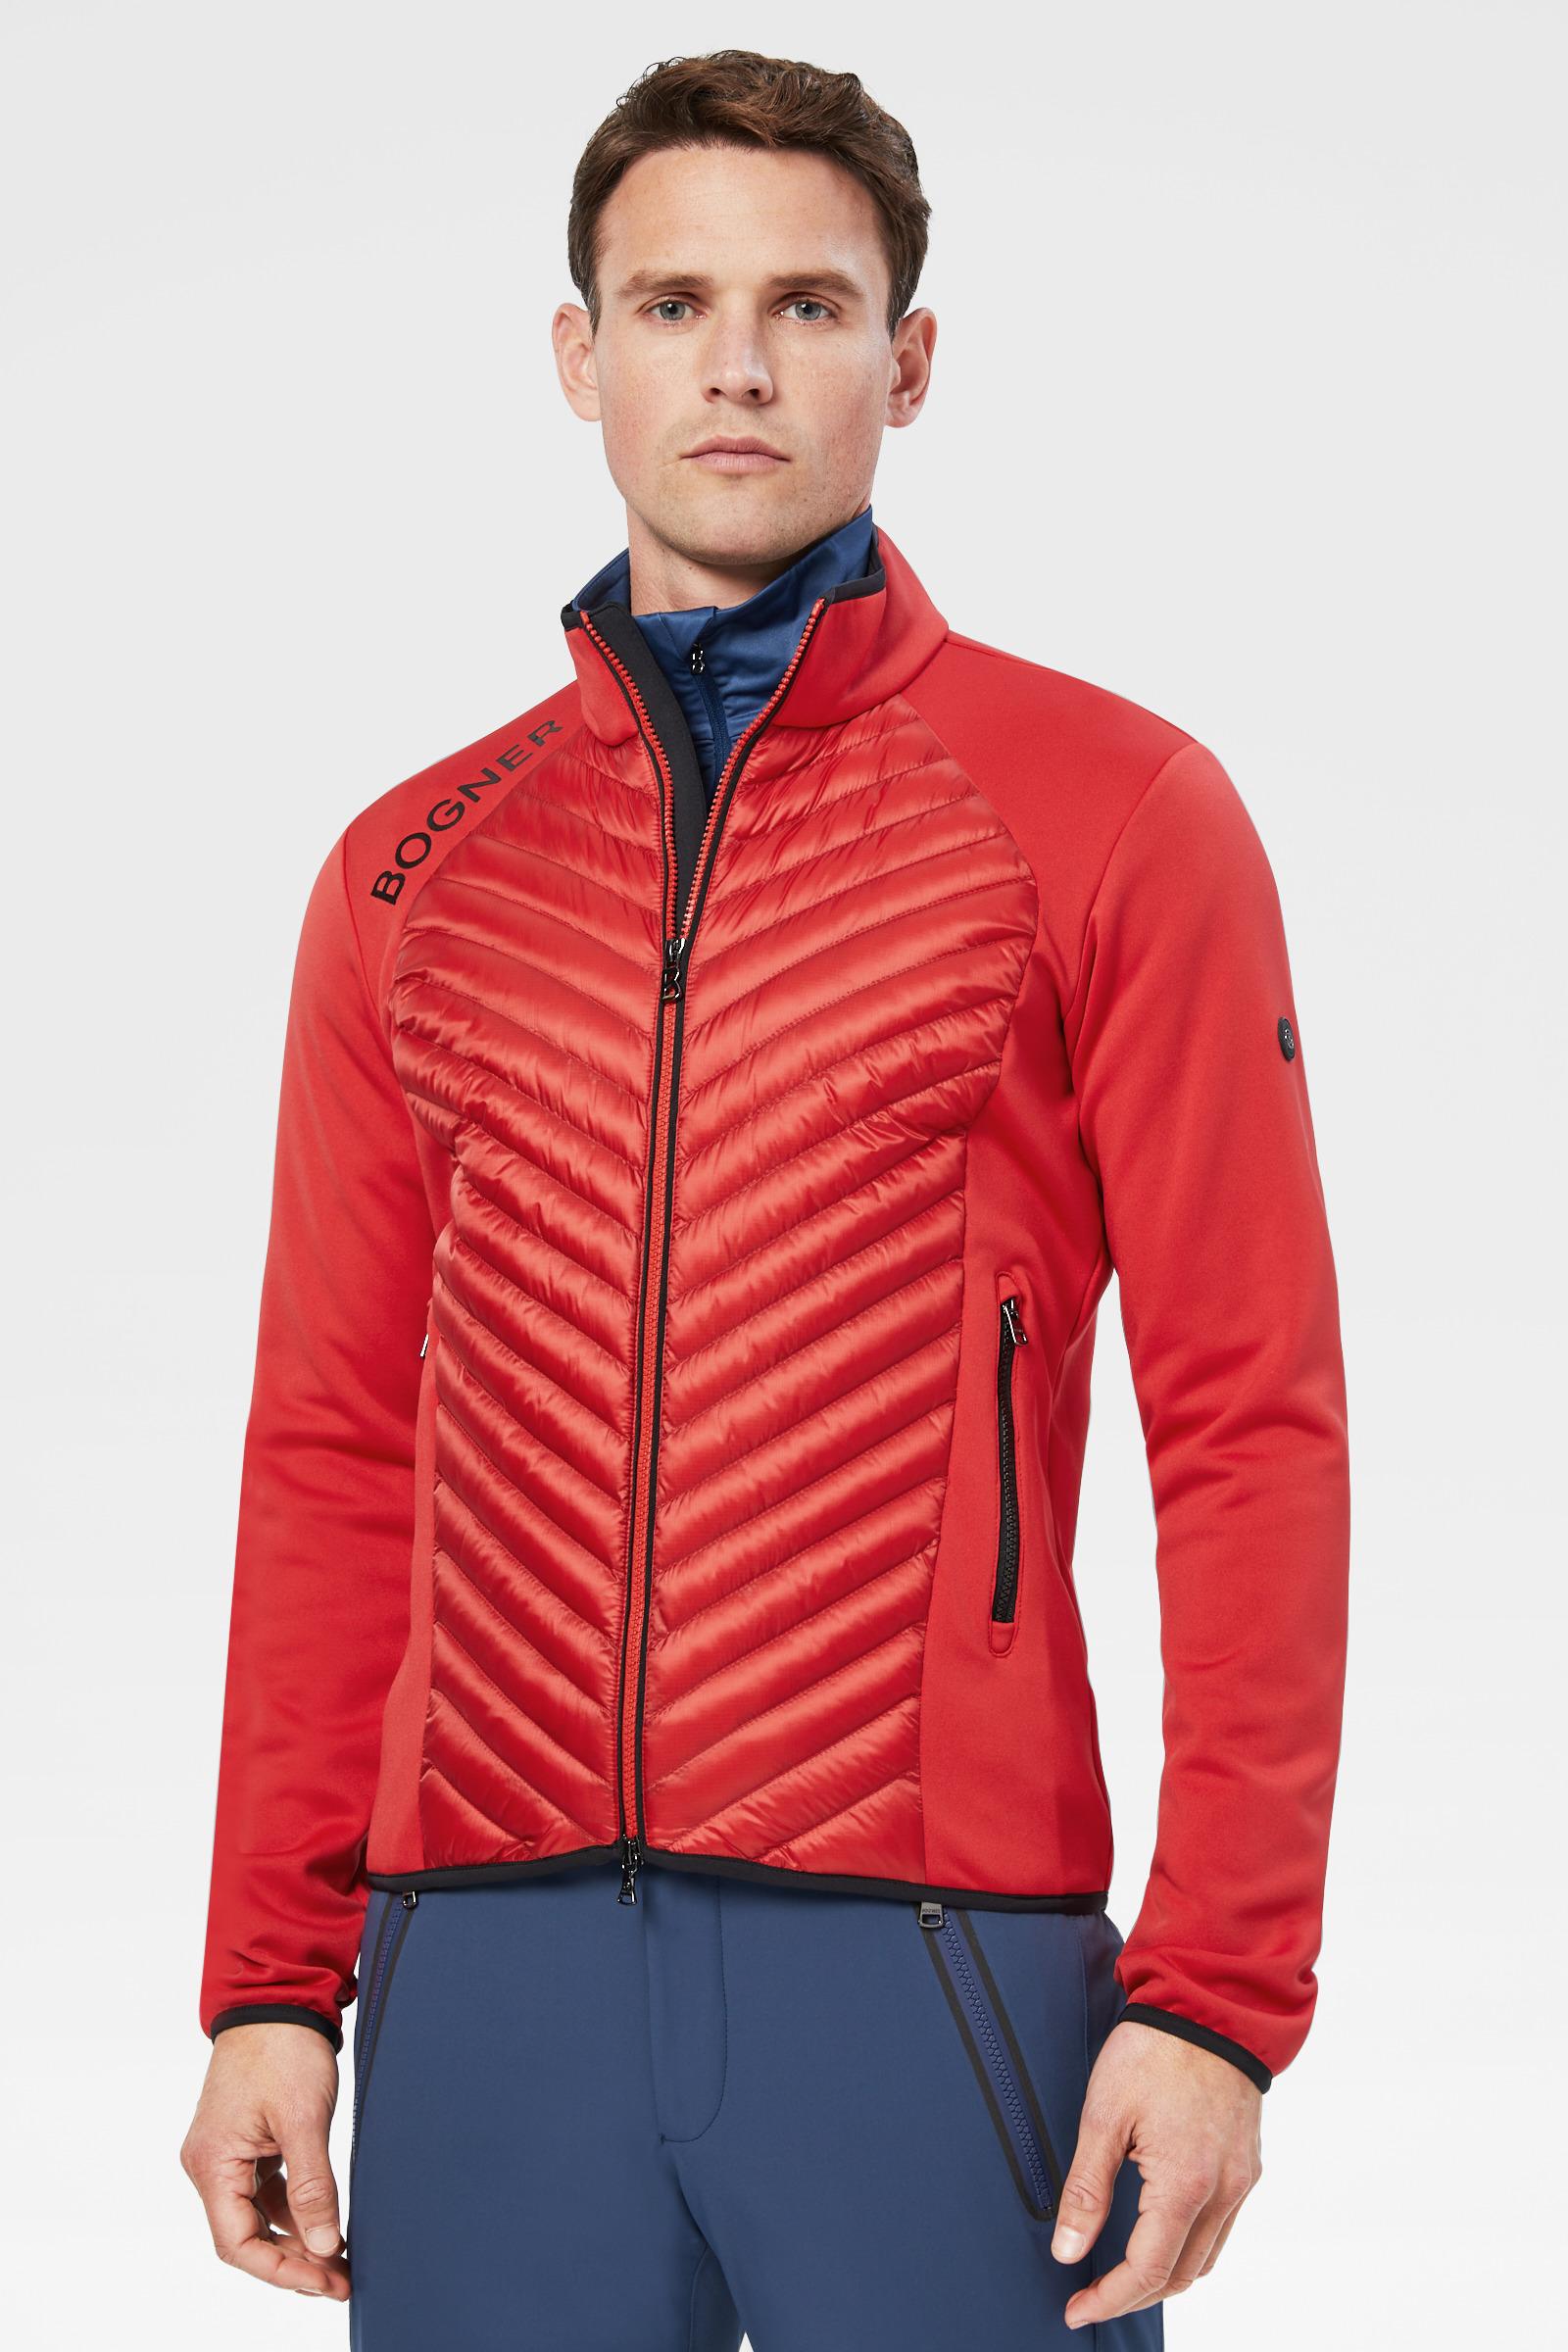 Bogner Maksim Hybrid Jacket In Red for Men - Lyst